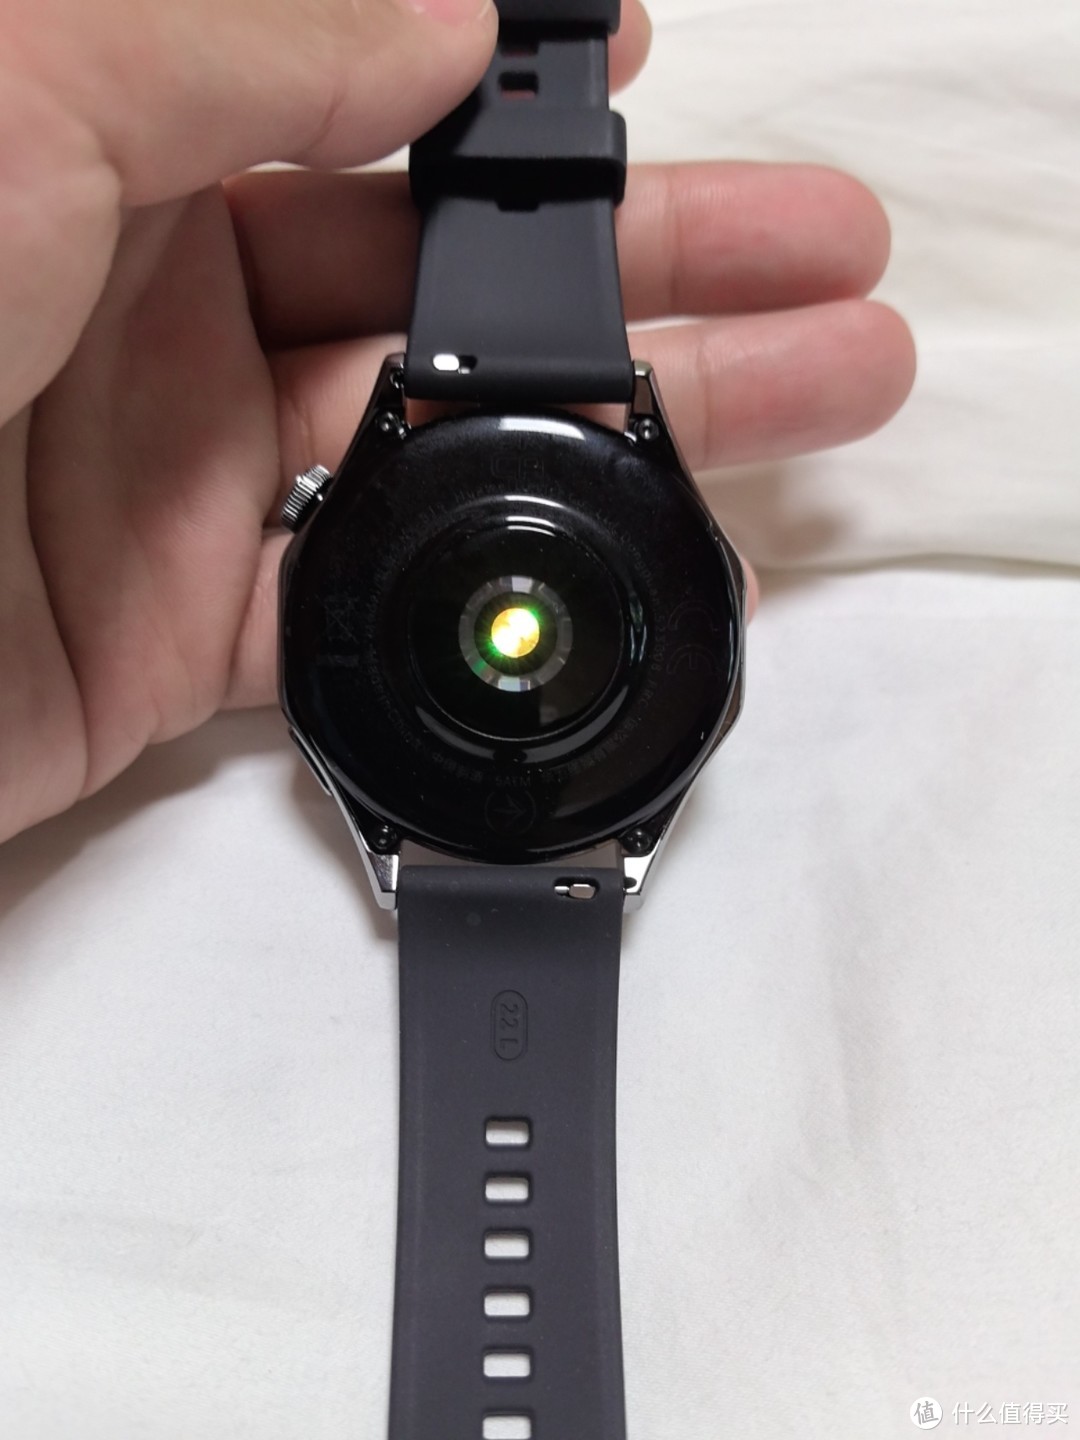 watch4gt:性价比最高的智能手表之一